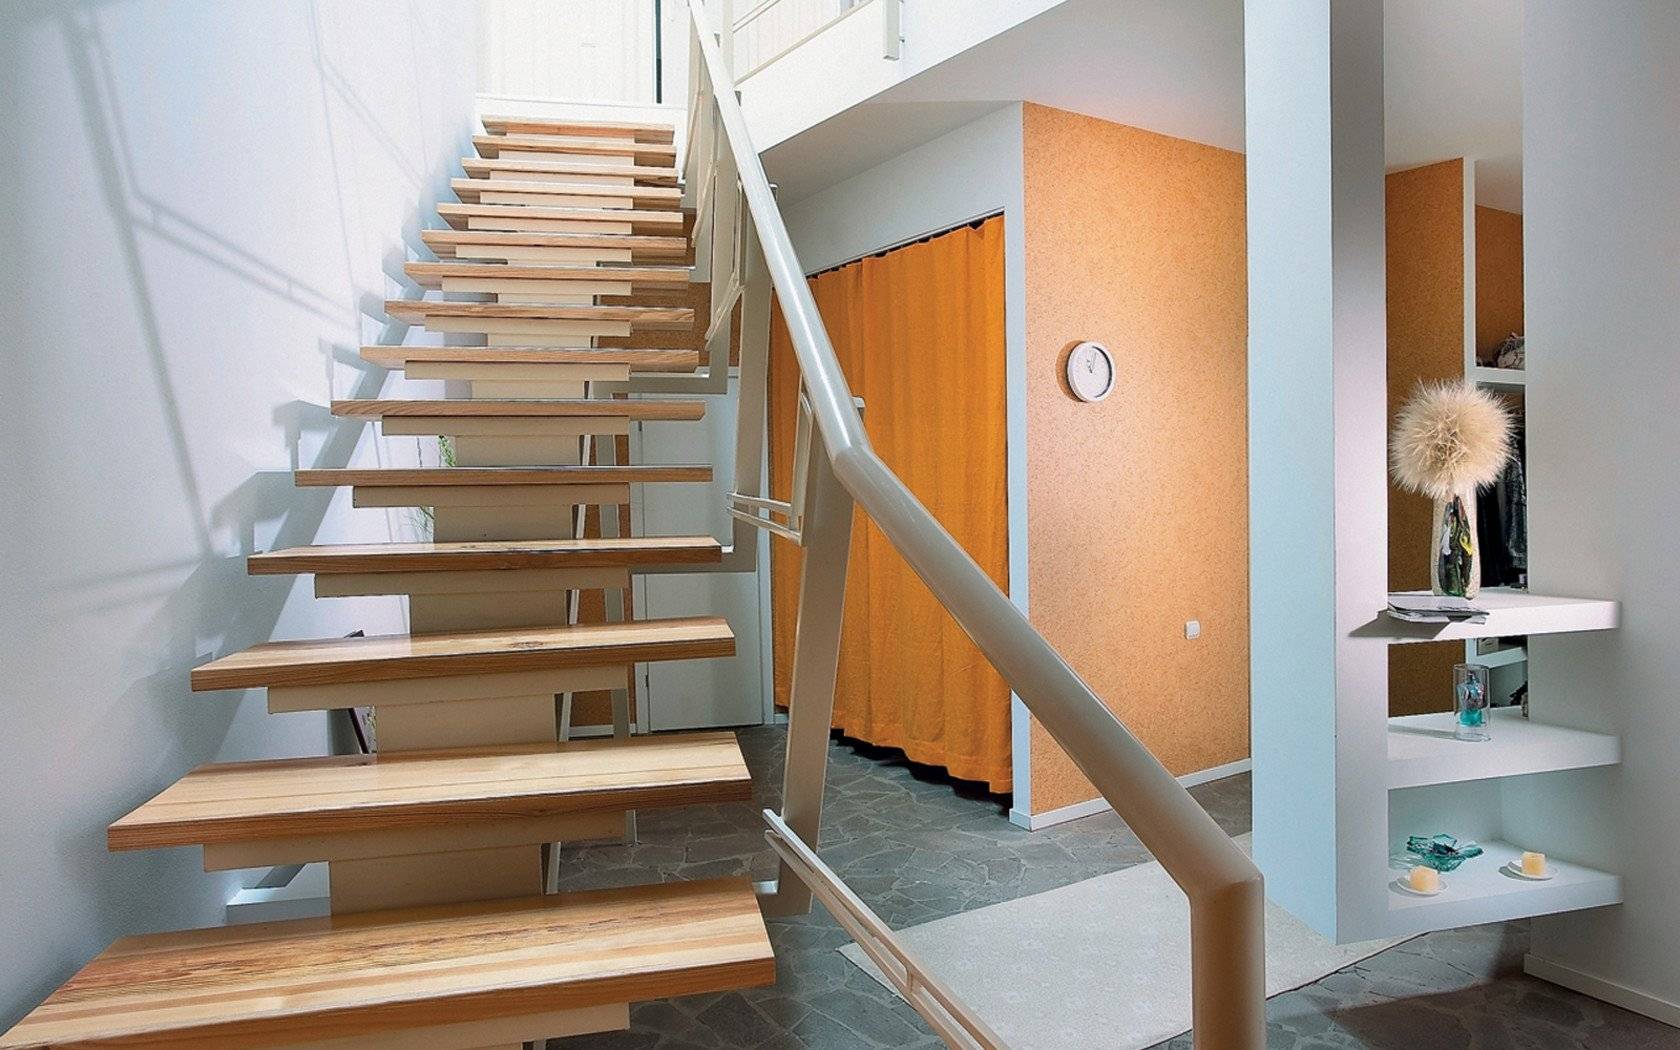 Лестница на второй этаж в частном доме: как сделать своими руками, пошаговая инструкция, сборка – ремонт своими руками на m-stone.ru